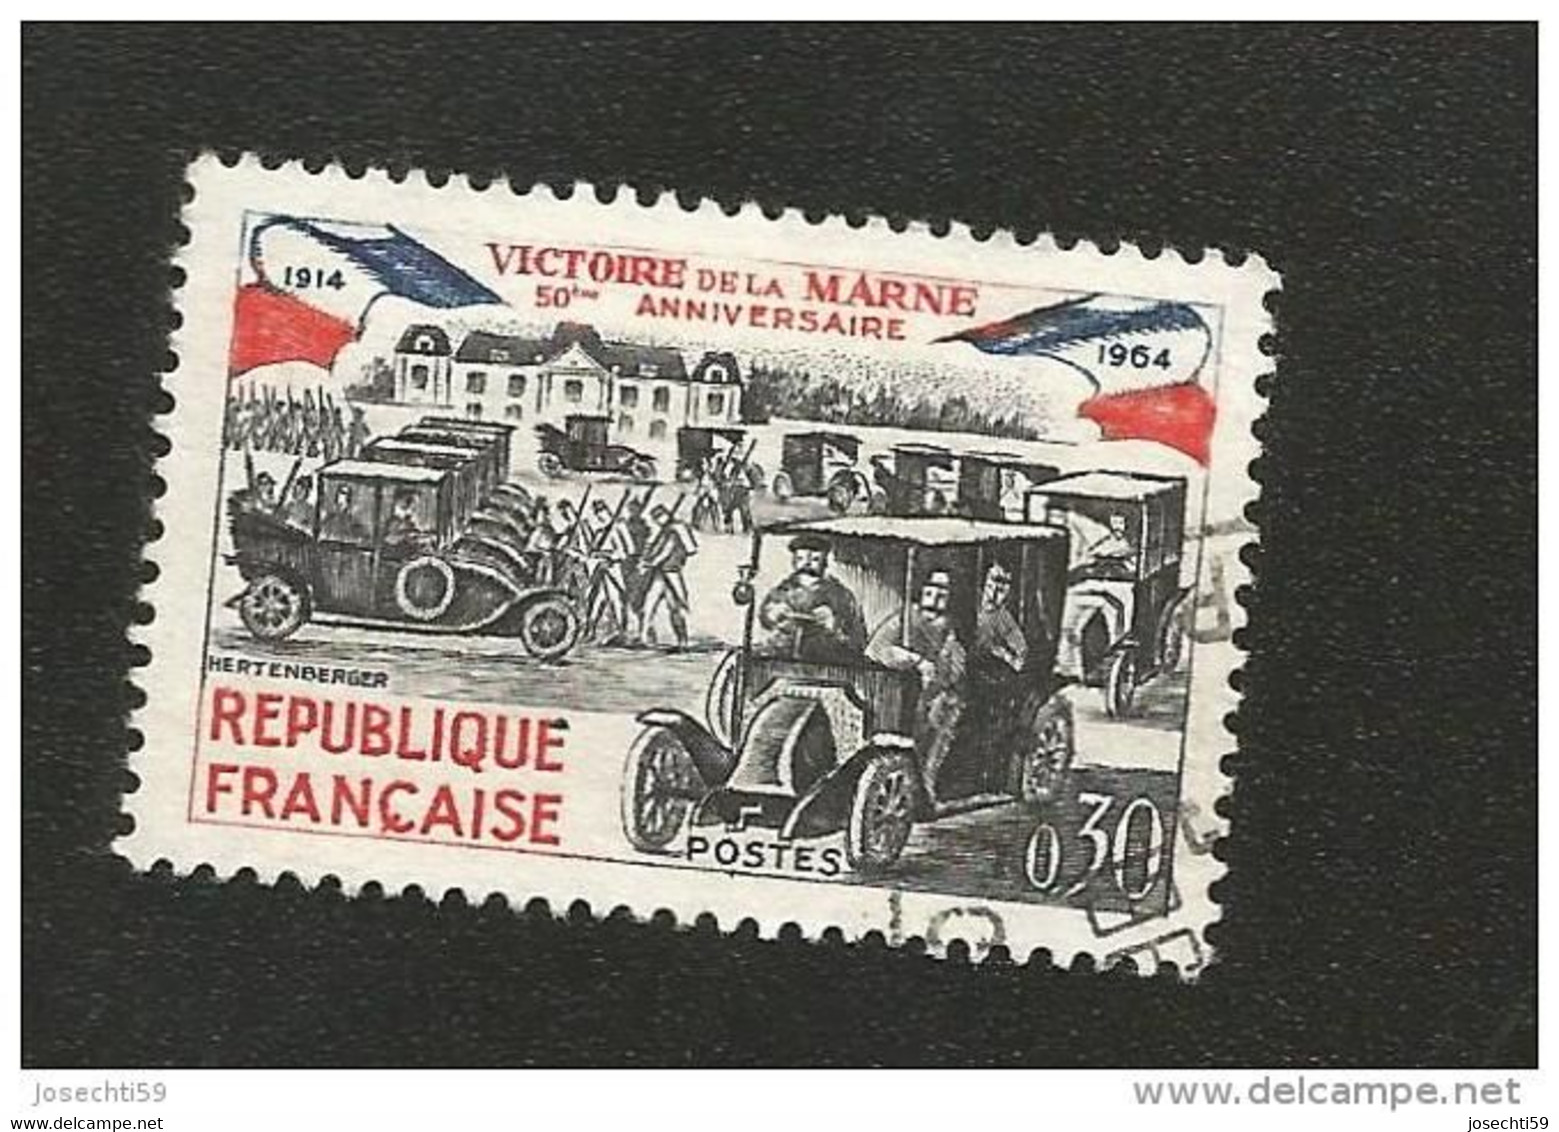 N° 1429 Victoire De La Marne 50ème Anniversaire Variété Encre Baveuse  Timbre  France Oblitéré 1964 - Usati